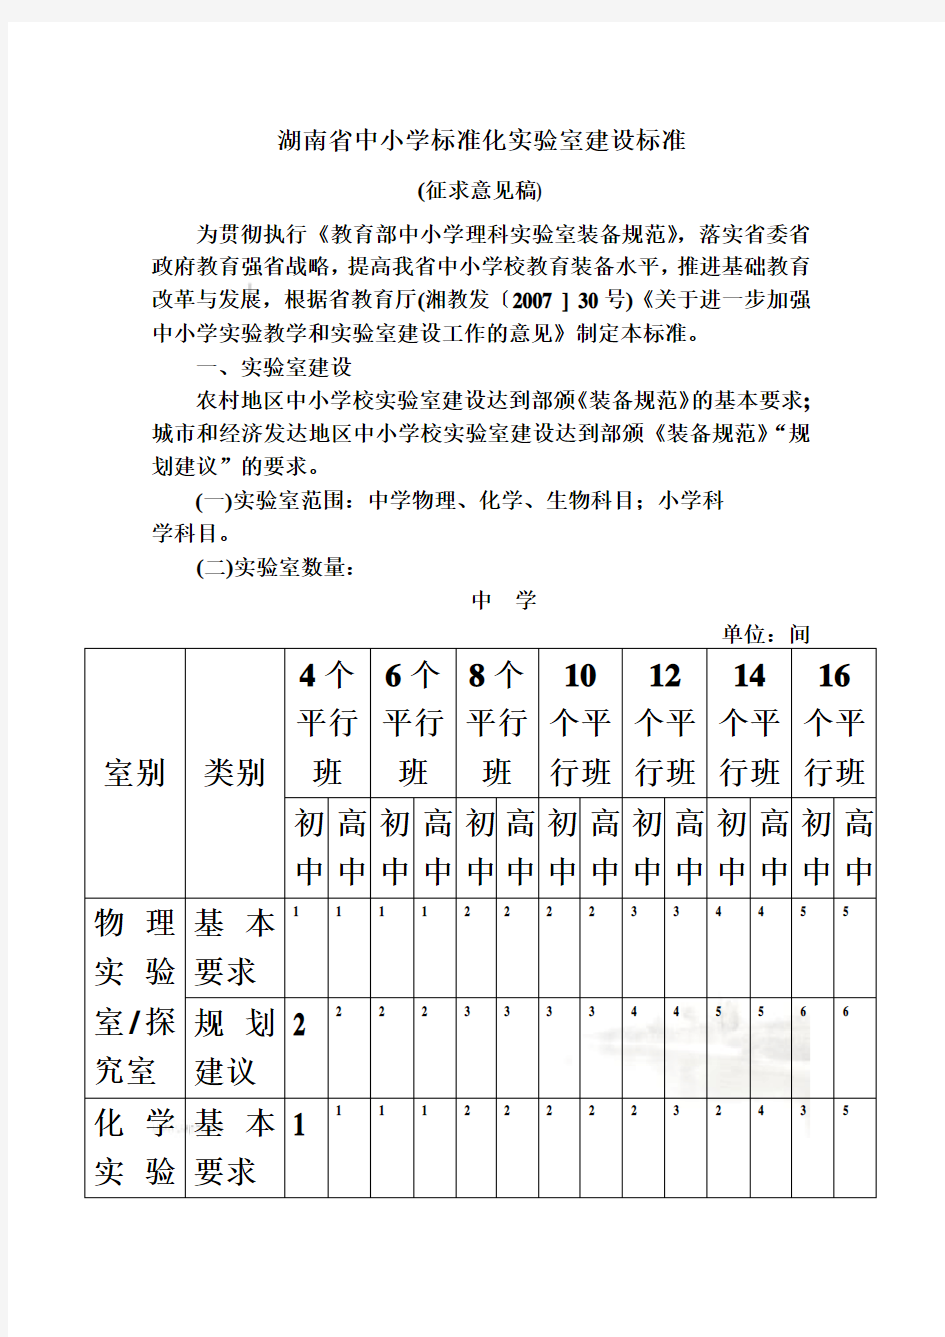 湖南省中小学标准化实验室建设标准概述(doc 9页)